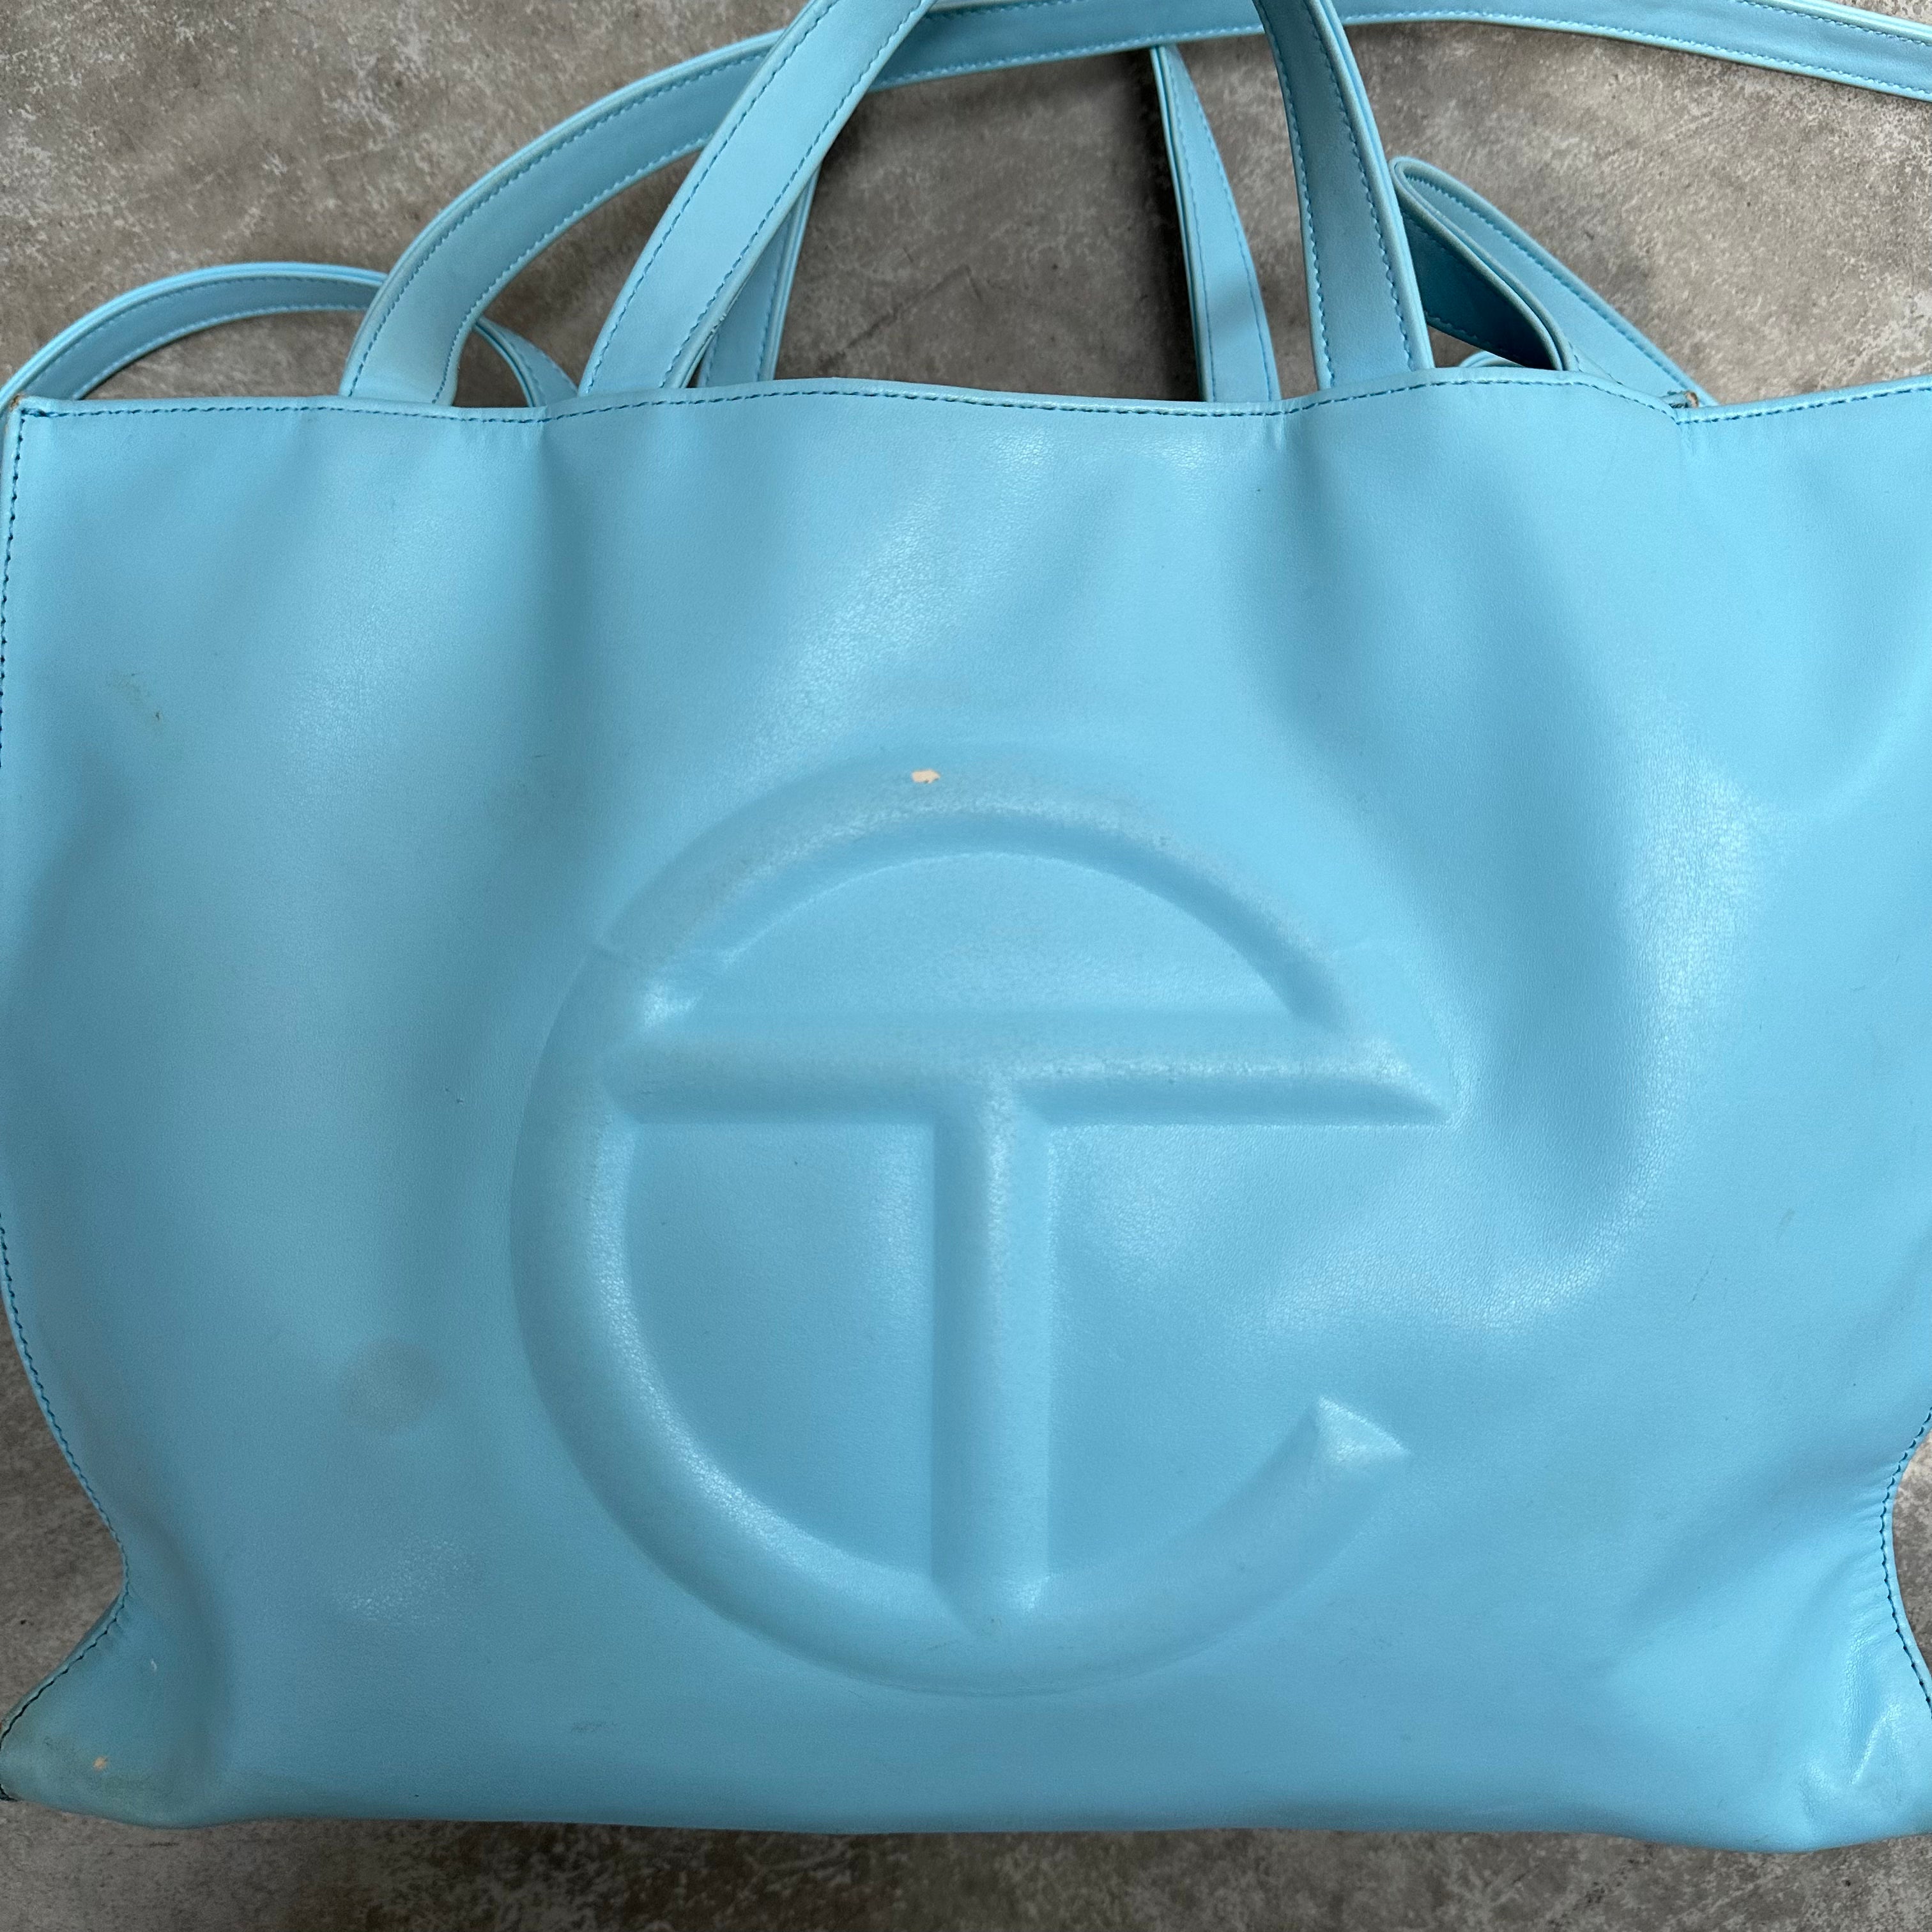 Telfar Bag Review: Large Pool Blue Shopping Bag - KatWalkSF